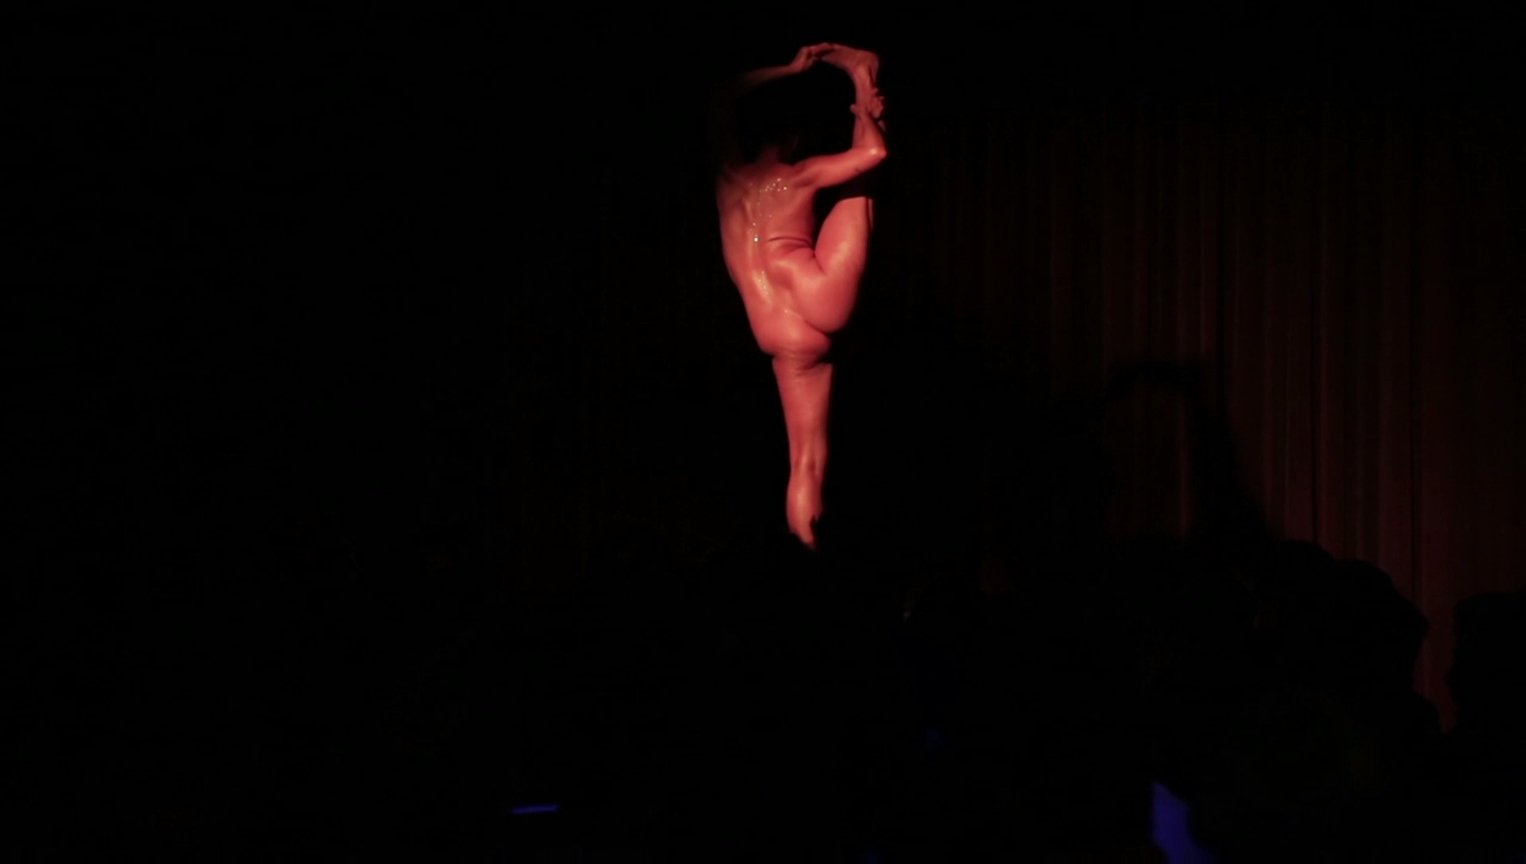 Jessica Mccann Nude On Stage Photo